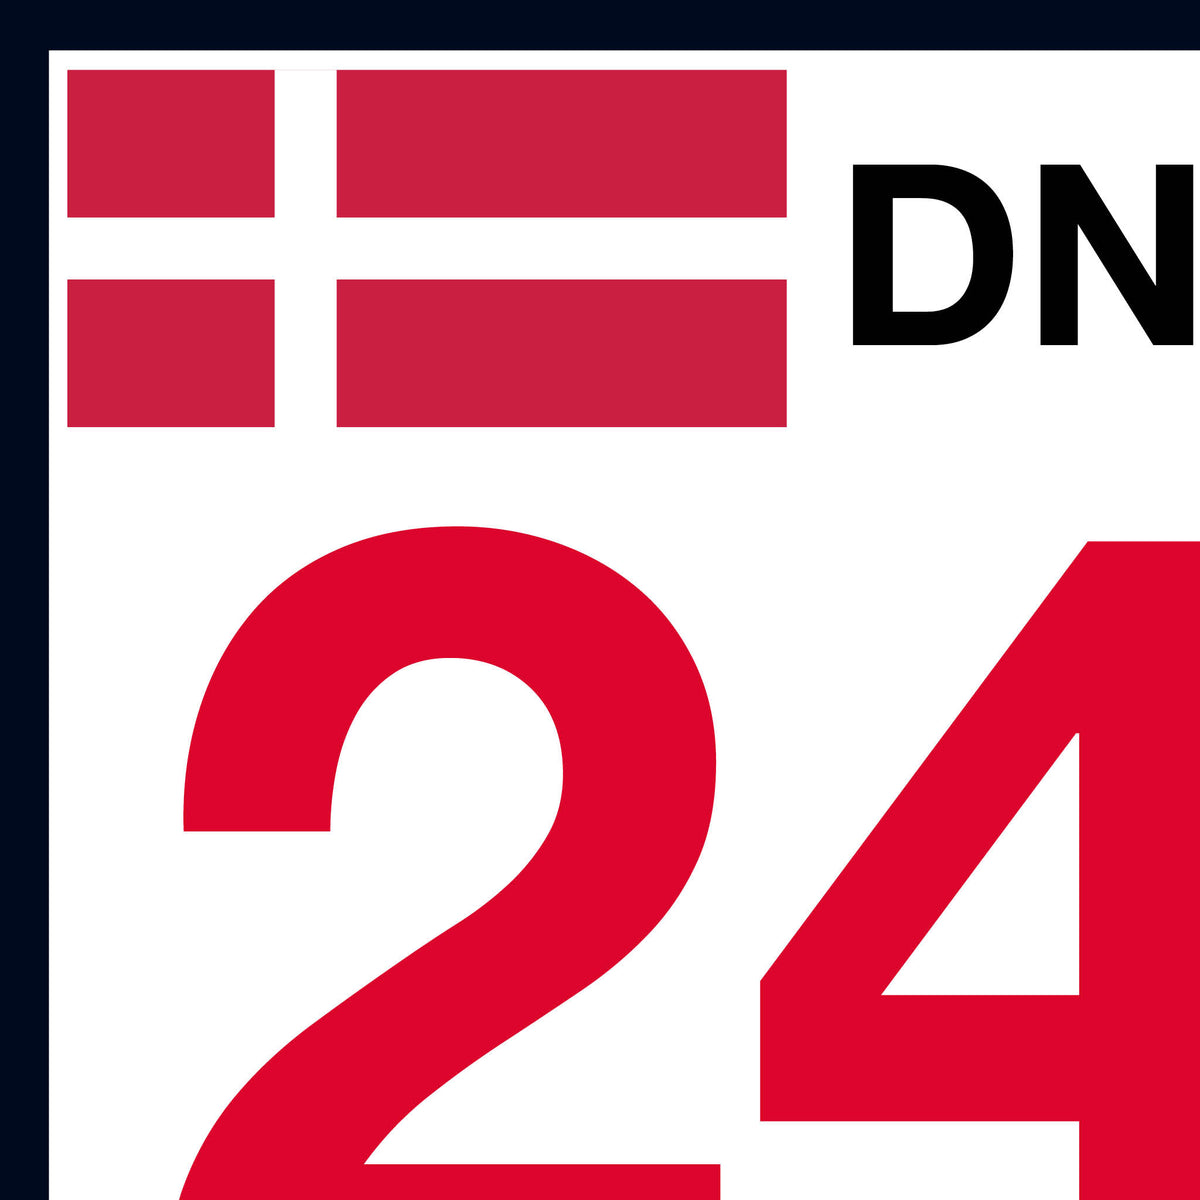 DNK Door Numbers (Pair)